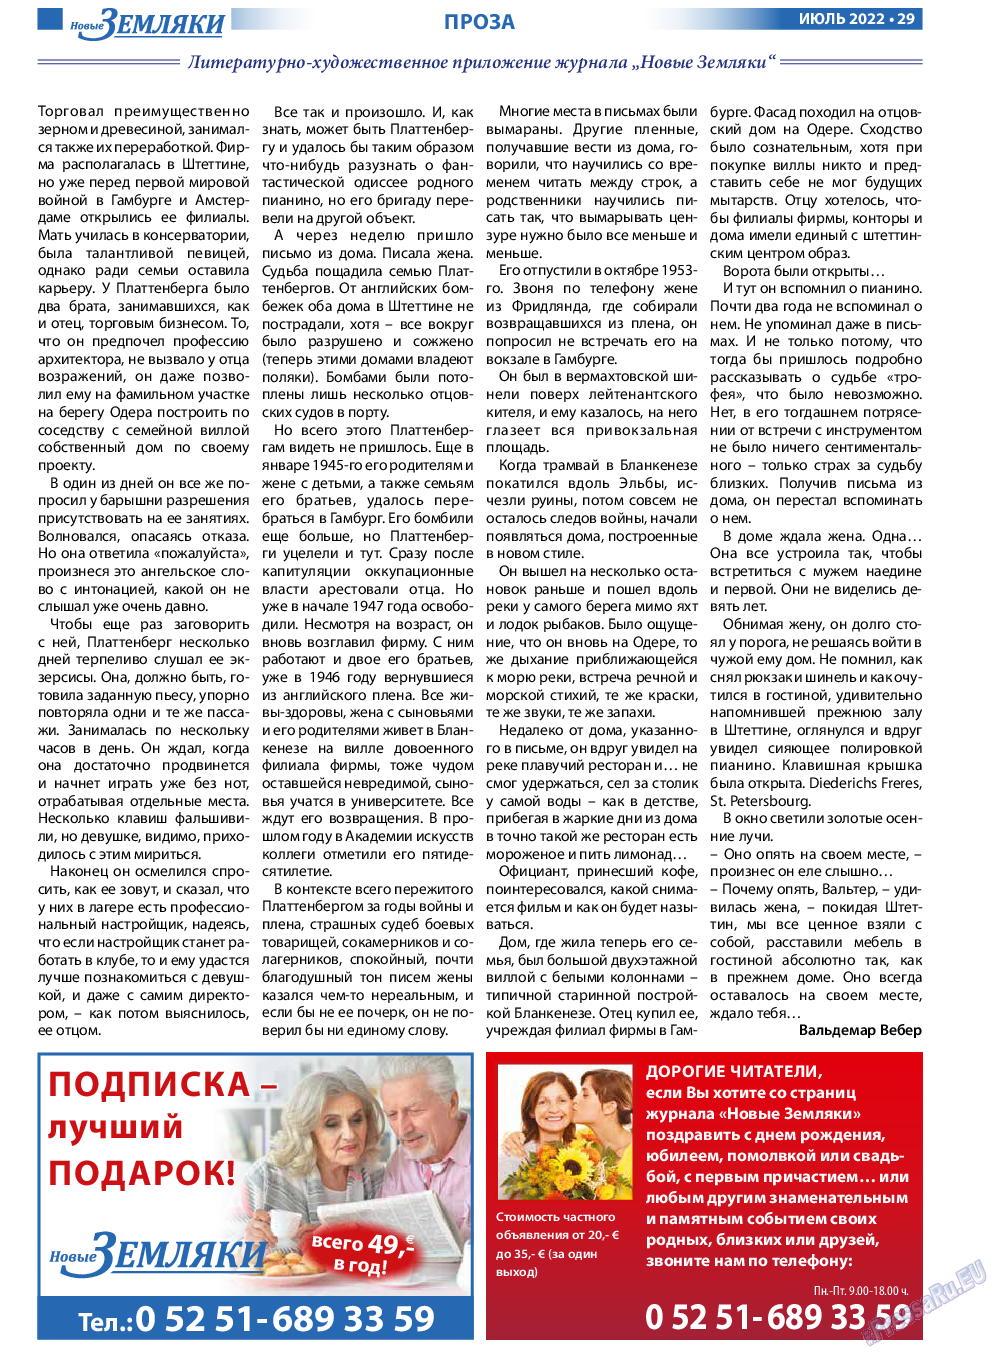 Новые Земляки, газета. 2022 №7 стр.29